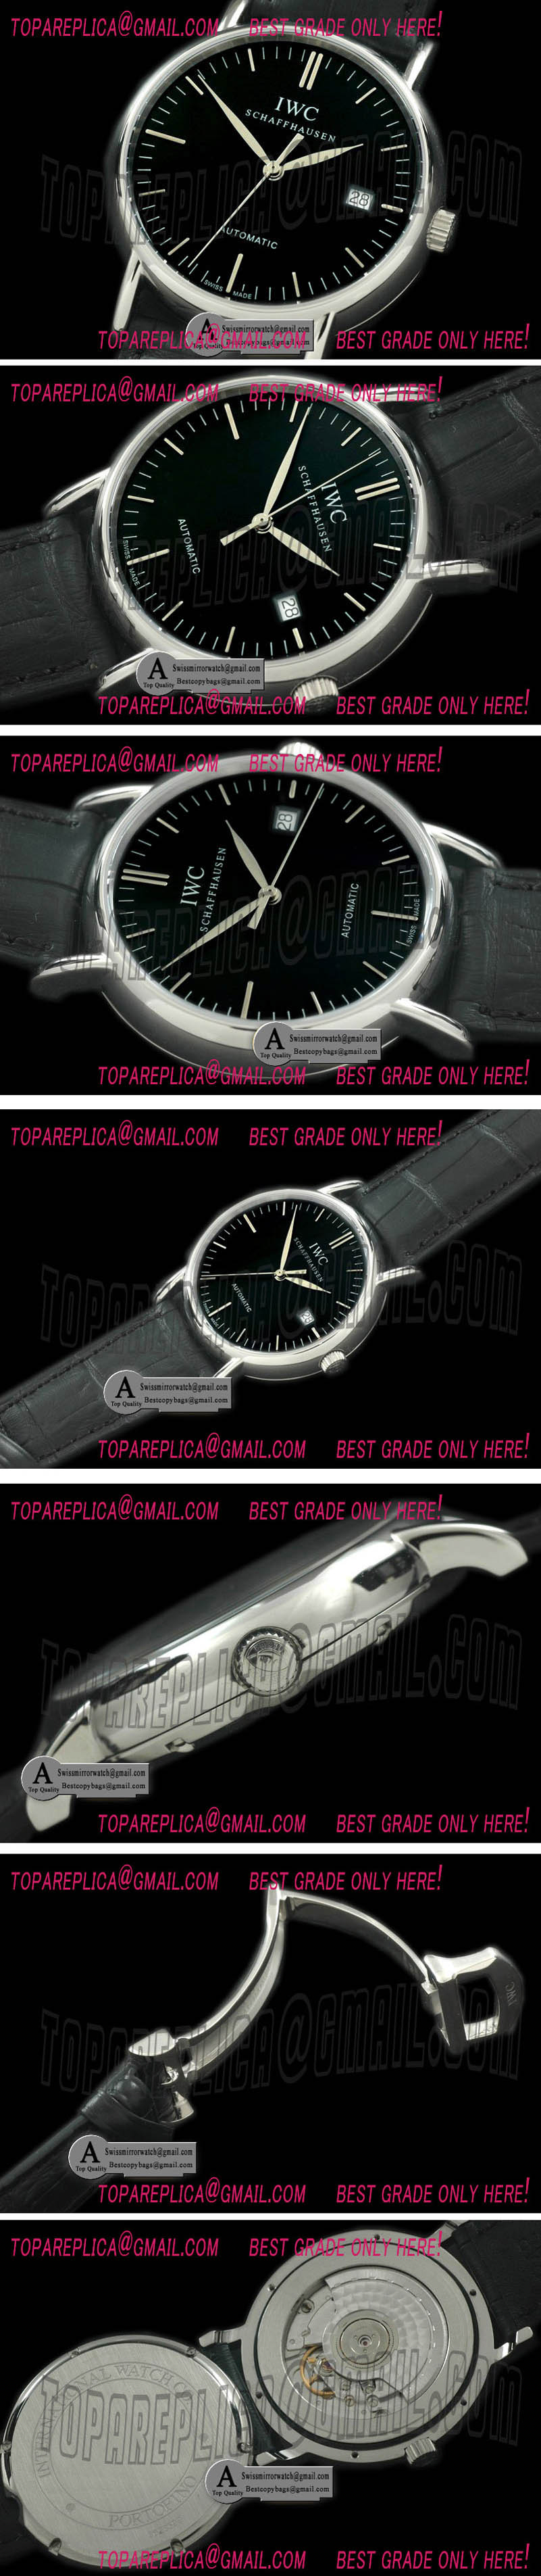 IWC Portofino Automatic SS/Leather Black Asia 2892 Replica Watches